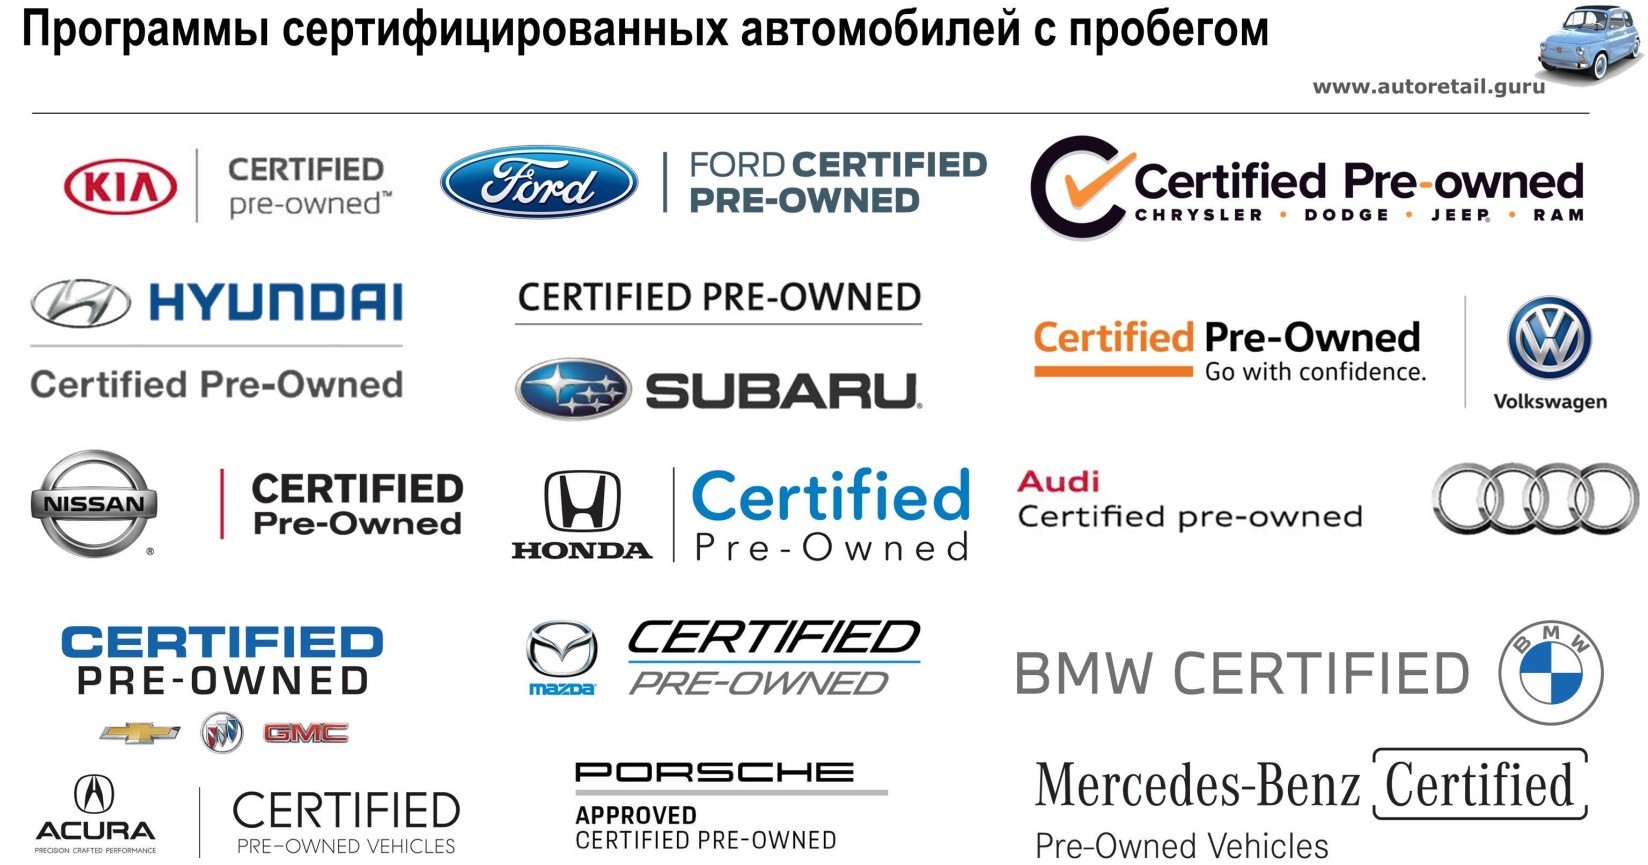 Програма сертифікованих автомобілів Honda (CPO)